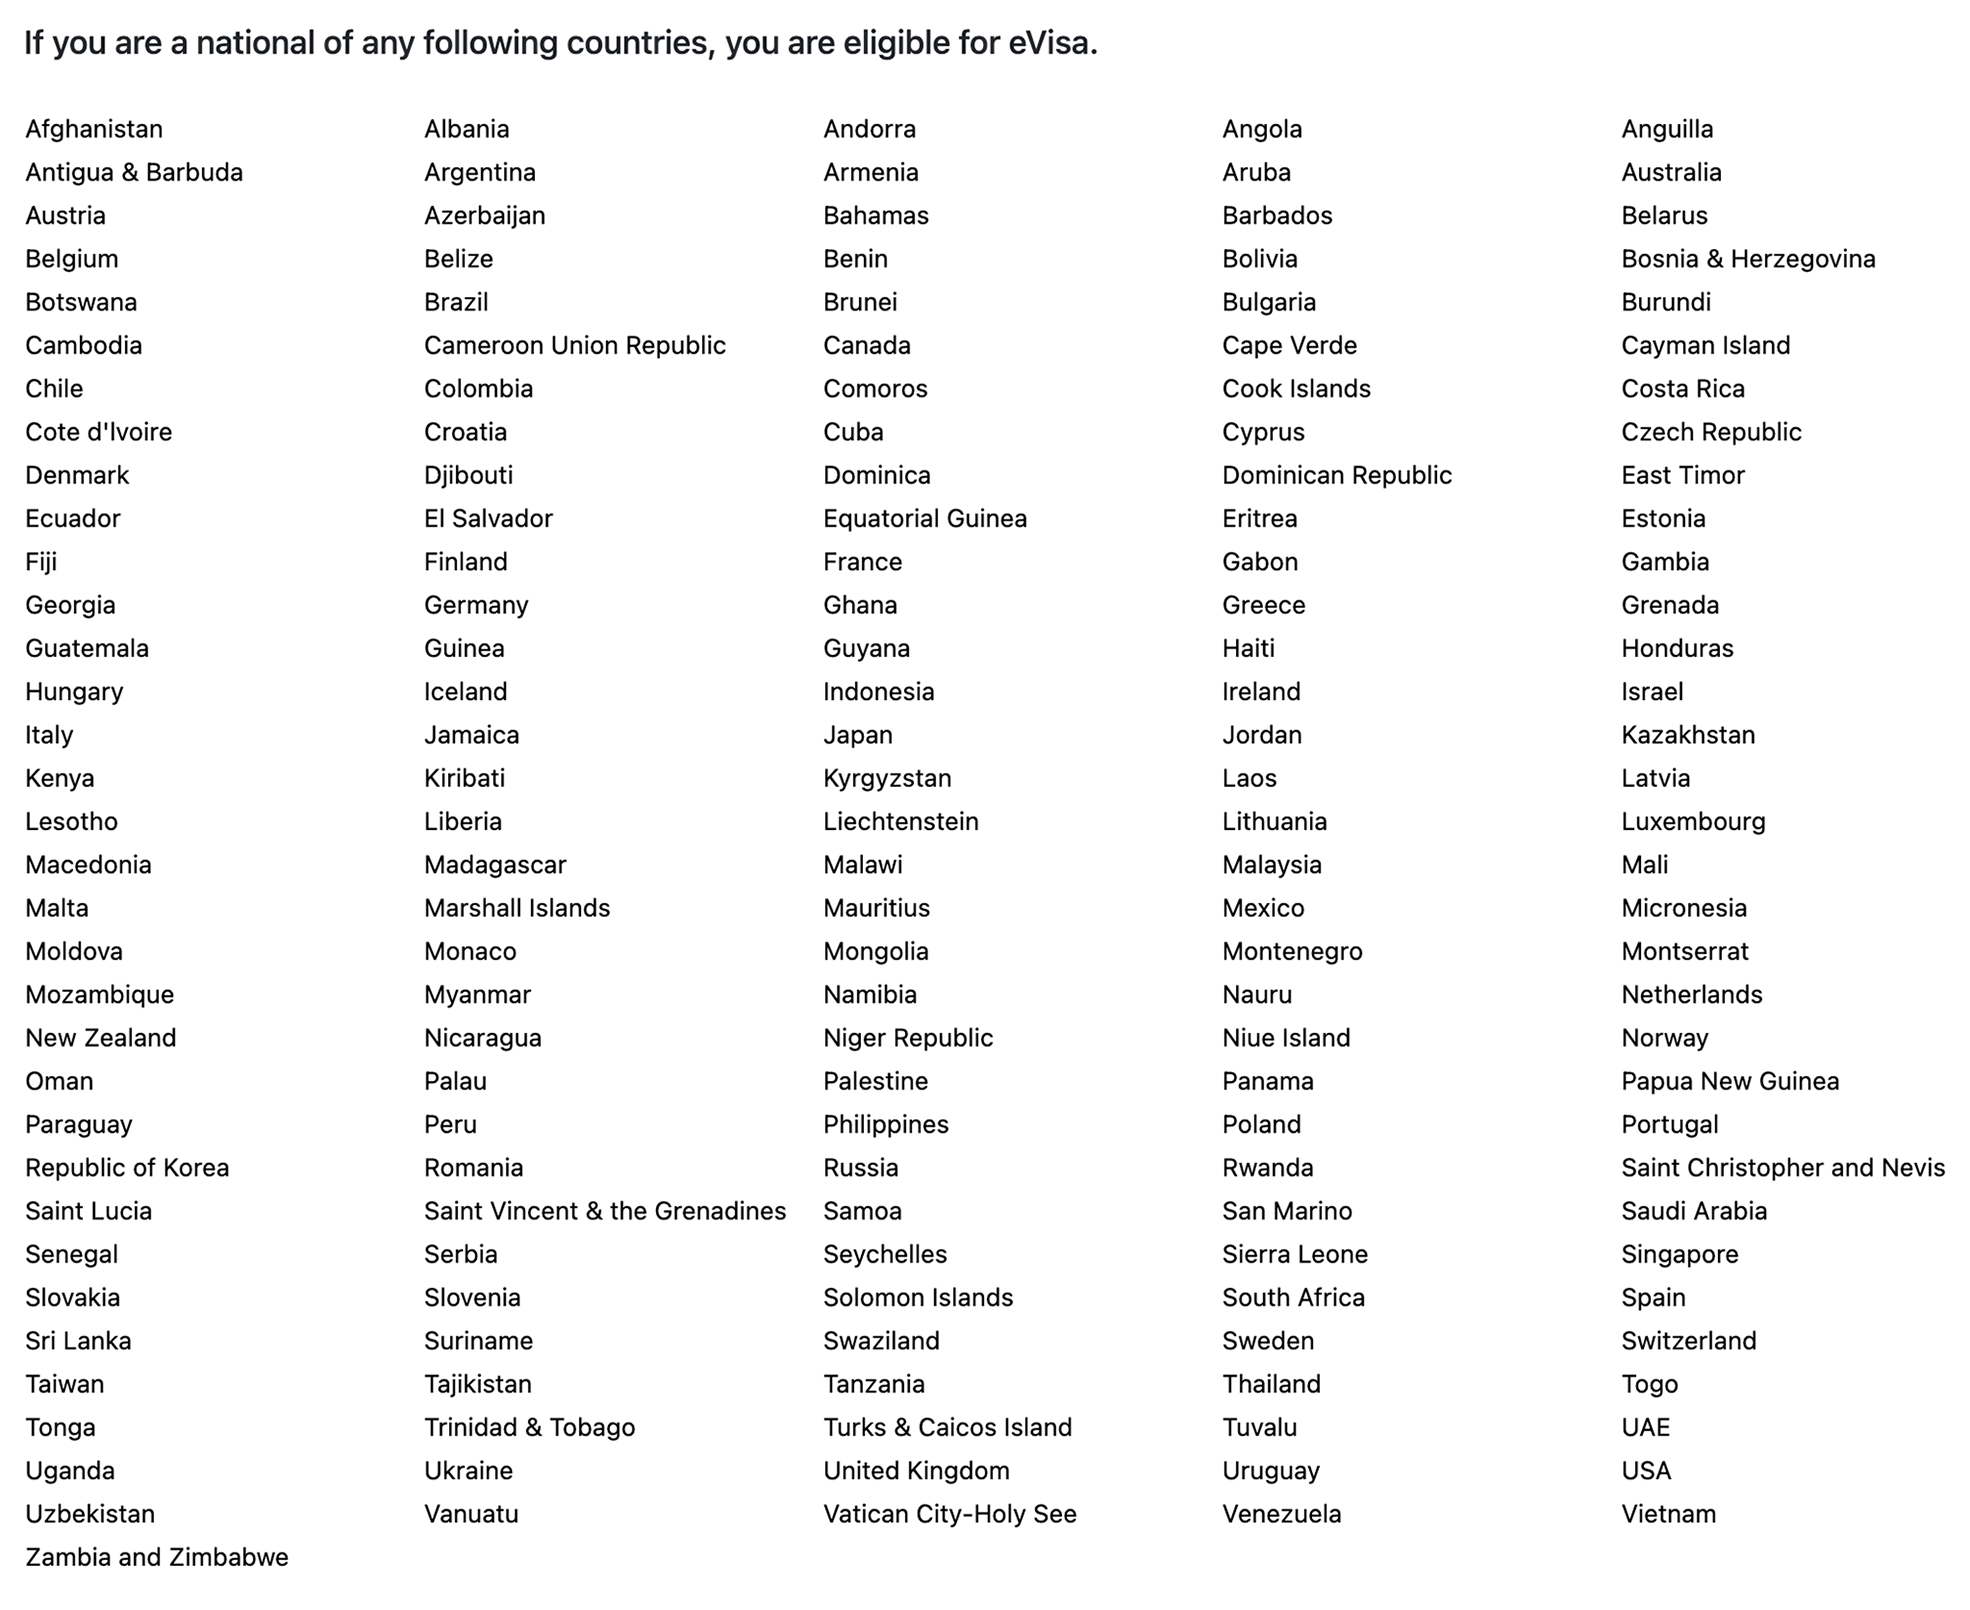 Россия входит в список стран, гражданам которых доступна eVisa. Источник: indianvisaonline.gov.in